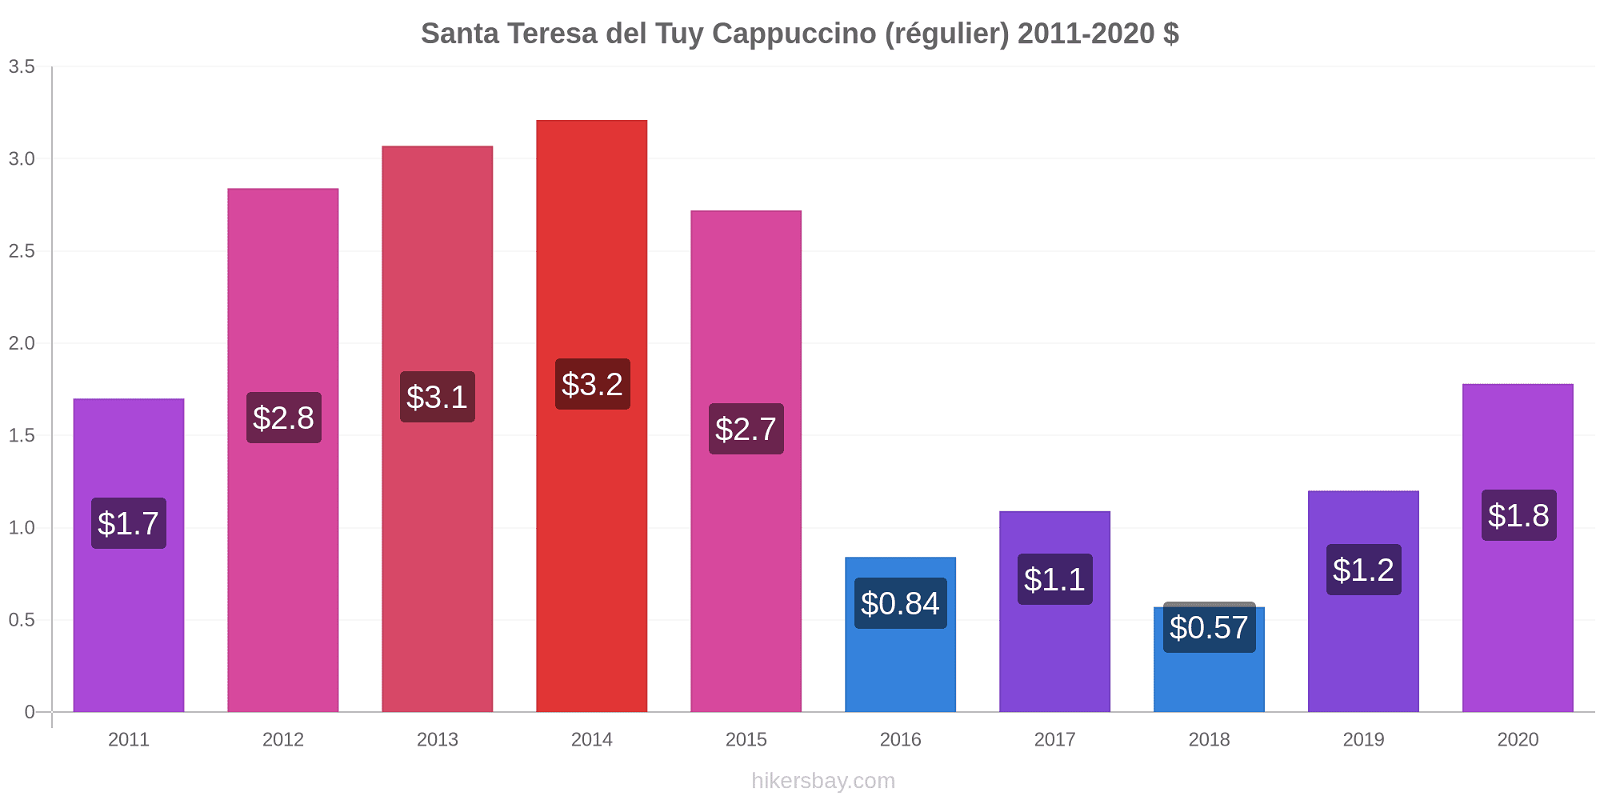 Santa Teresa del Tuy changements de prix Cappuccino (régulier) hikersbay.com